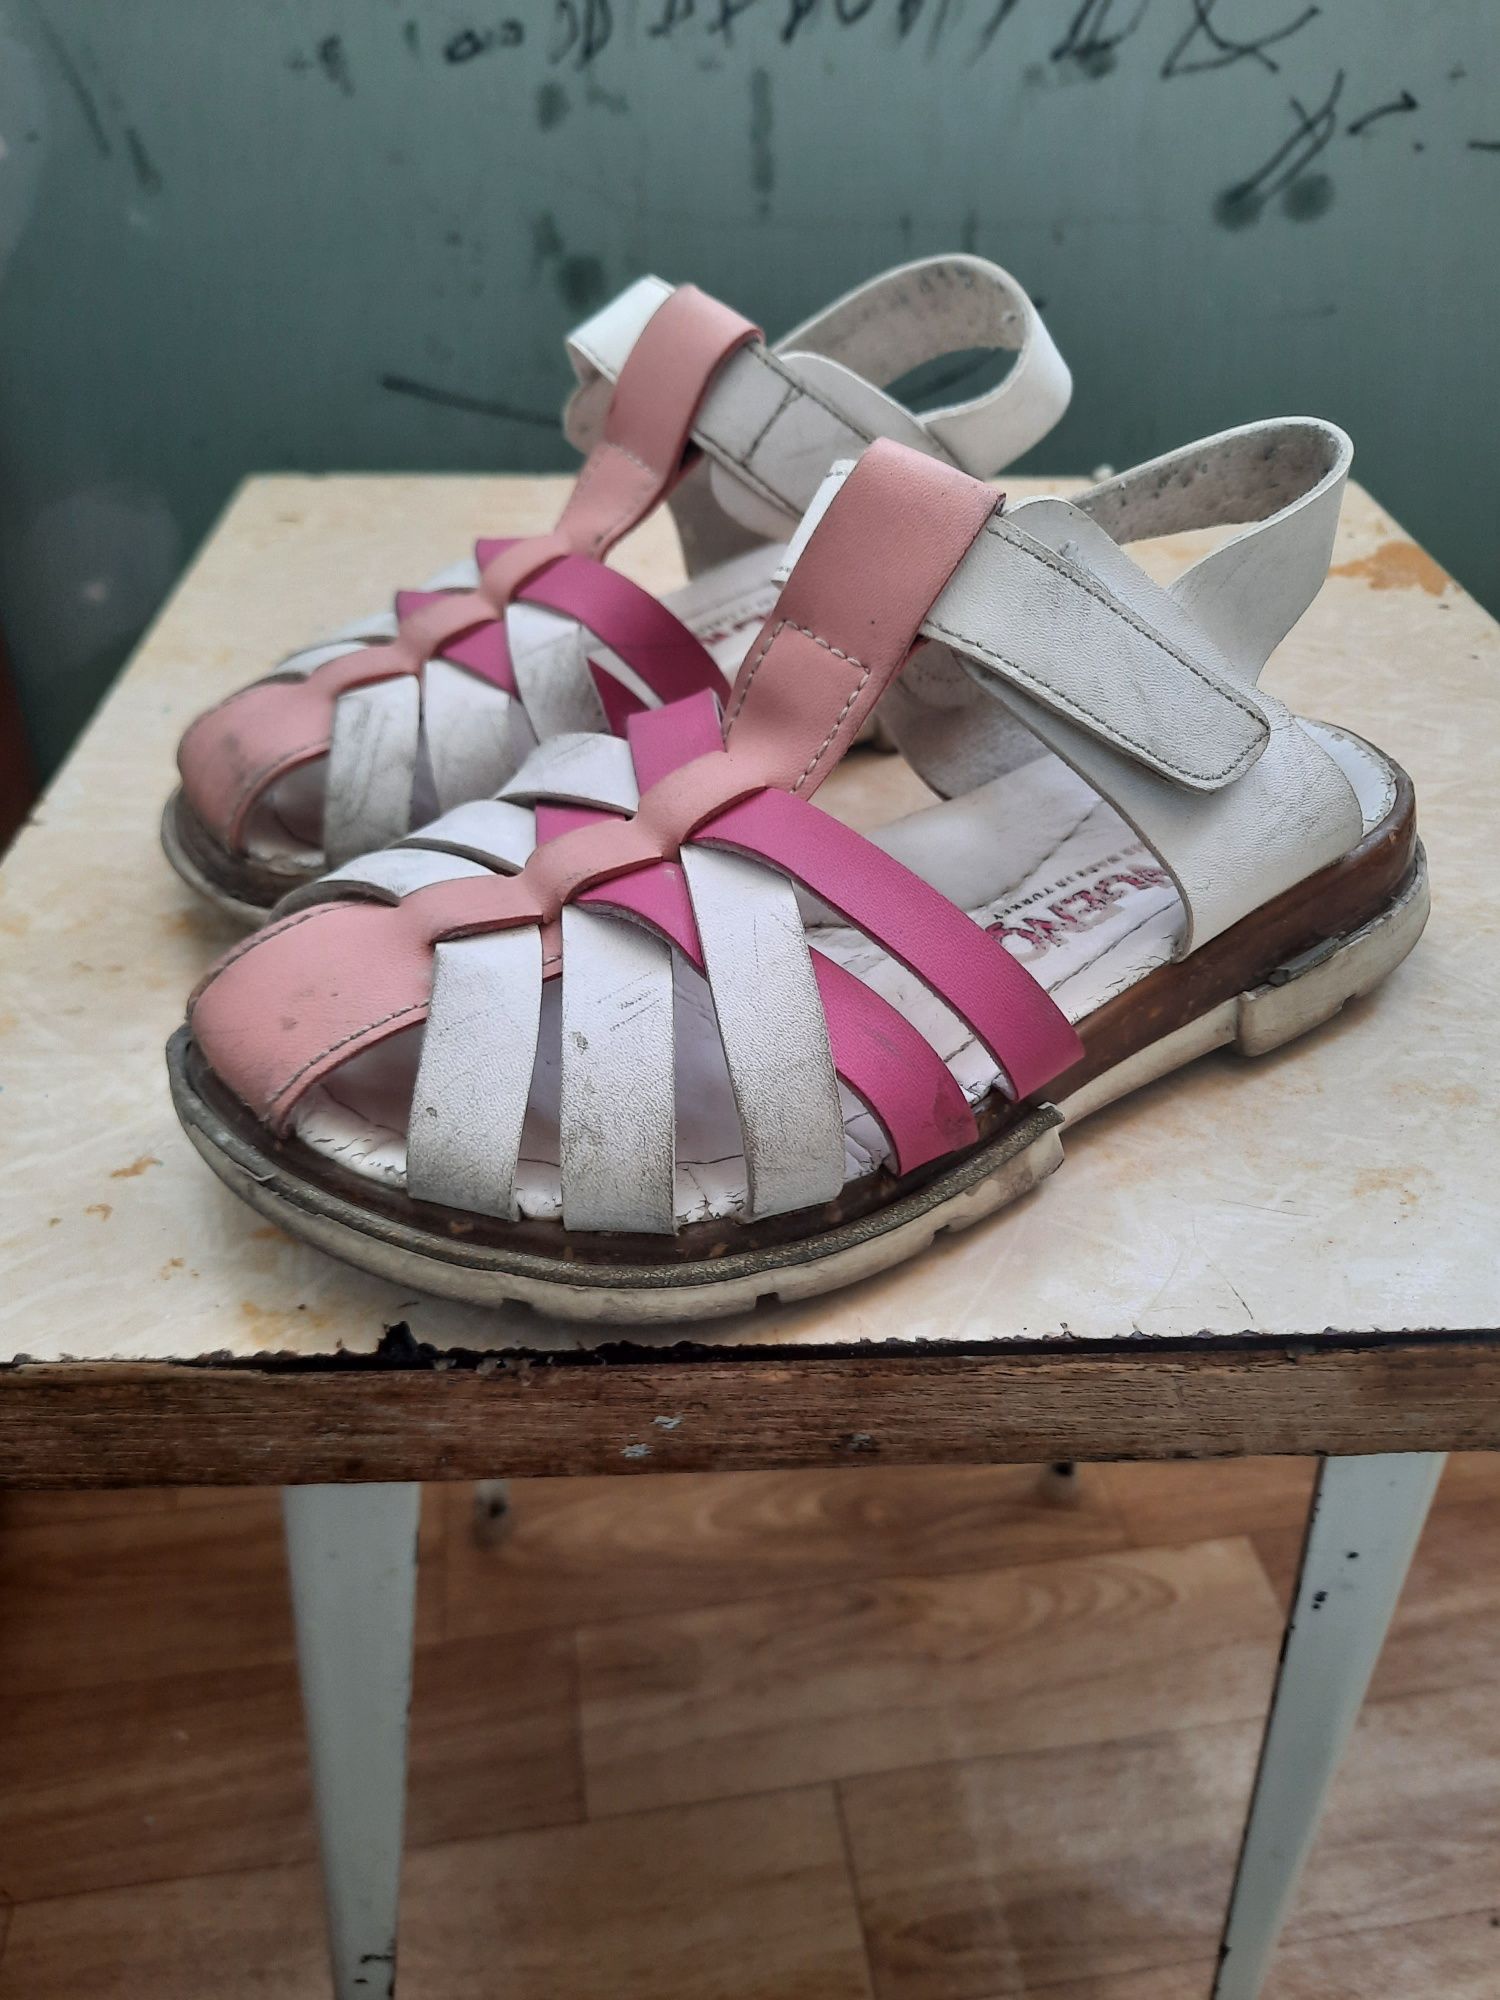 Продам детские обувы разные красовки и летние  в отличном состояние.